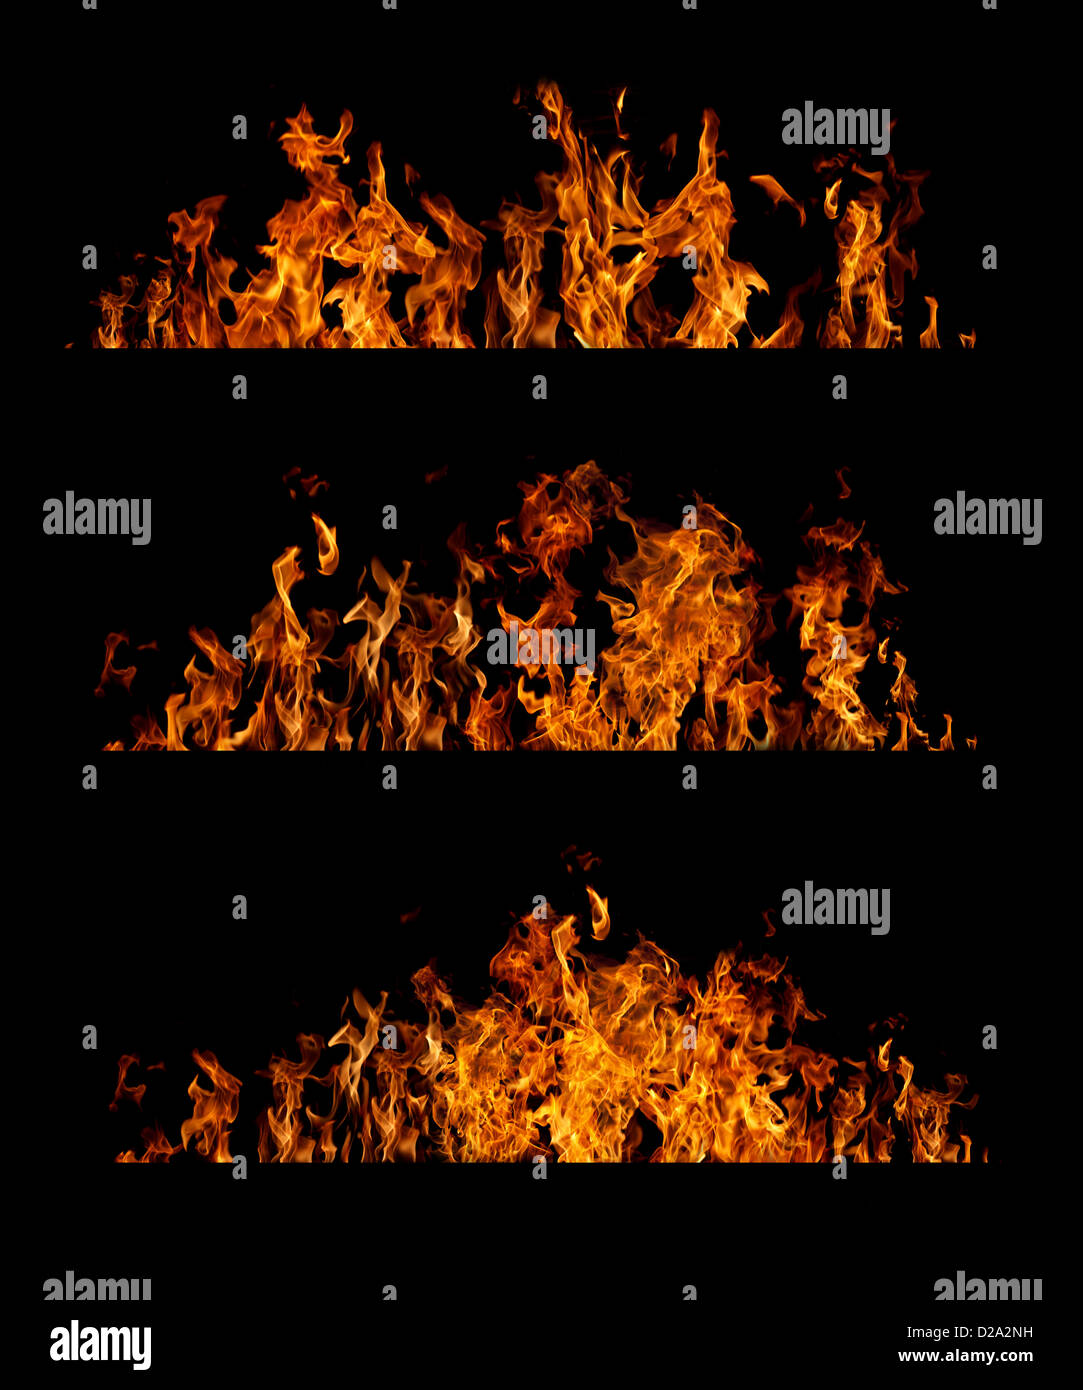 Fire flames collection sur fond noir Banque D'Images